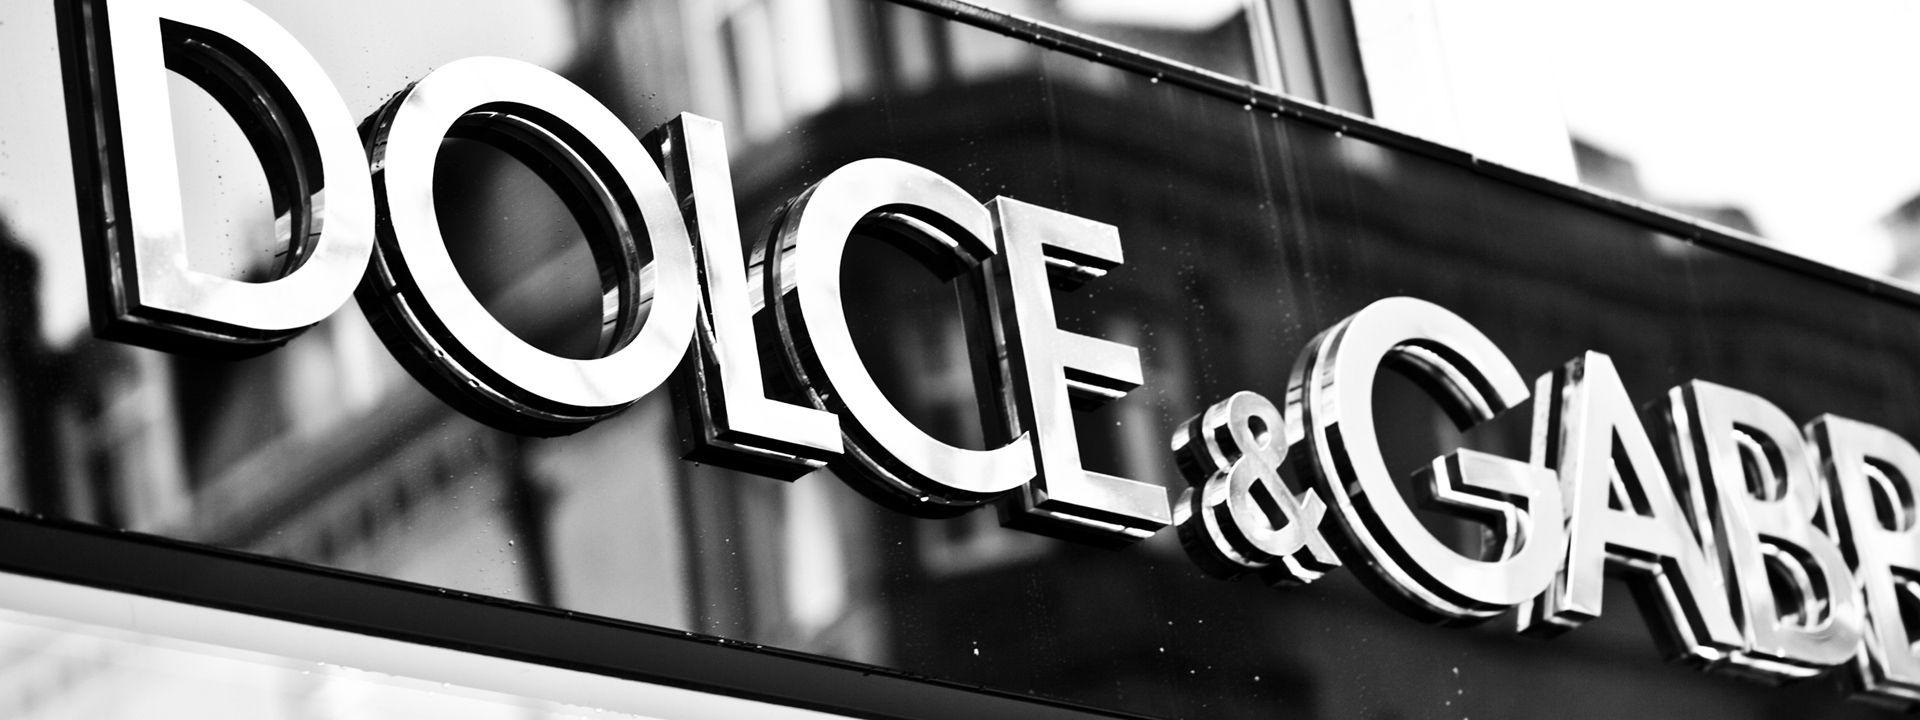 Dolce and Gabbana Logo - Dolce & Gabbana Store, Sloane Street, London